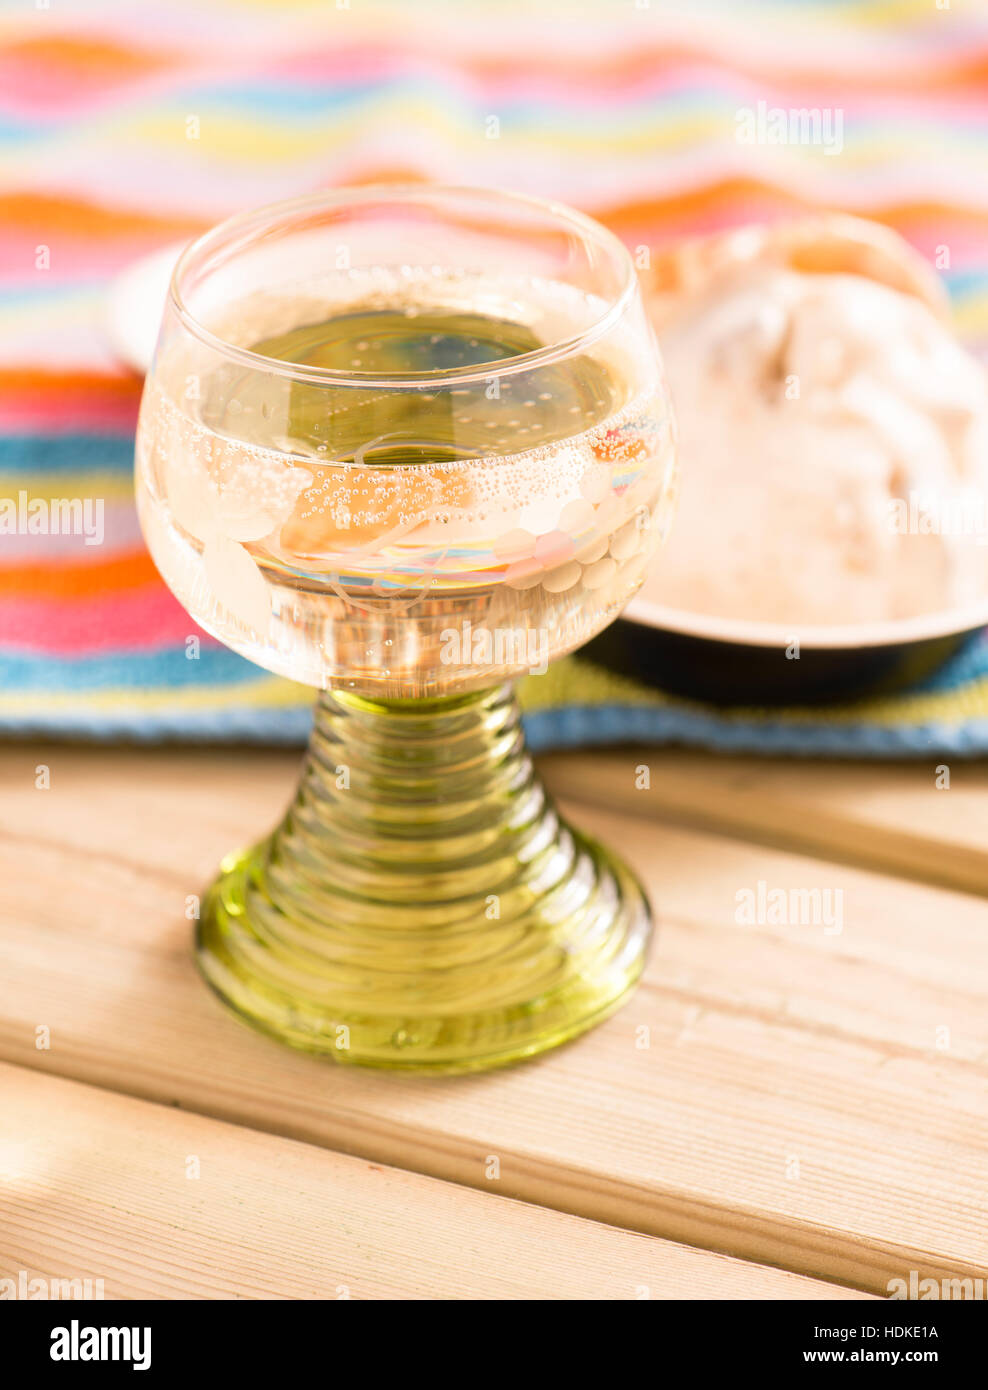 Dolce vino bianco frizzante con gelato in background. Estate rinfresco o dessert. Foto Stock